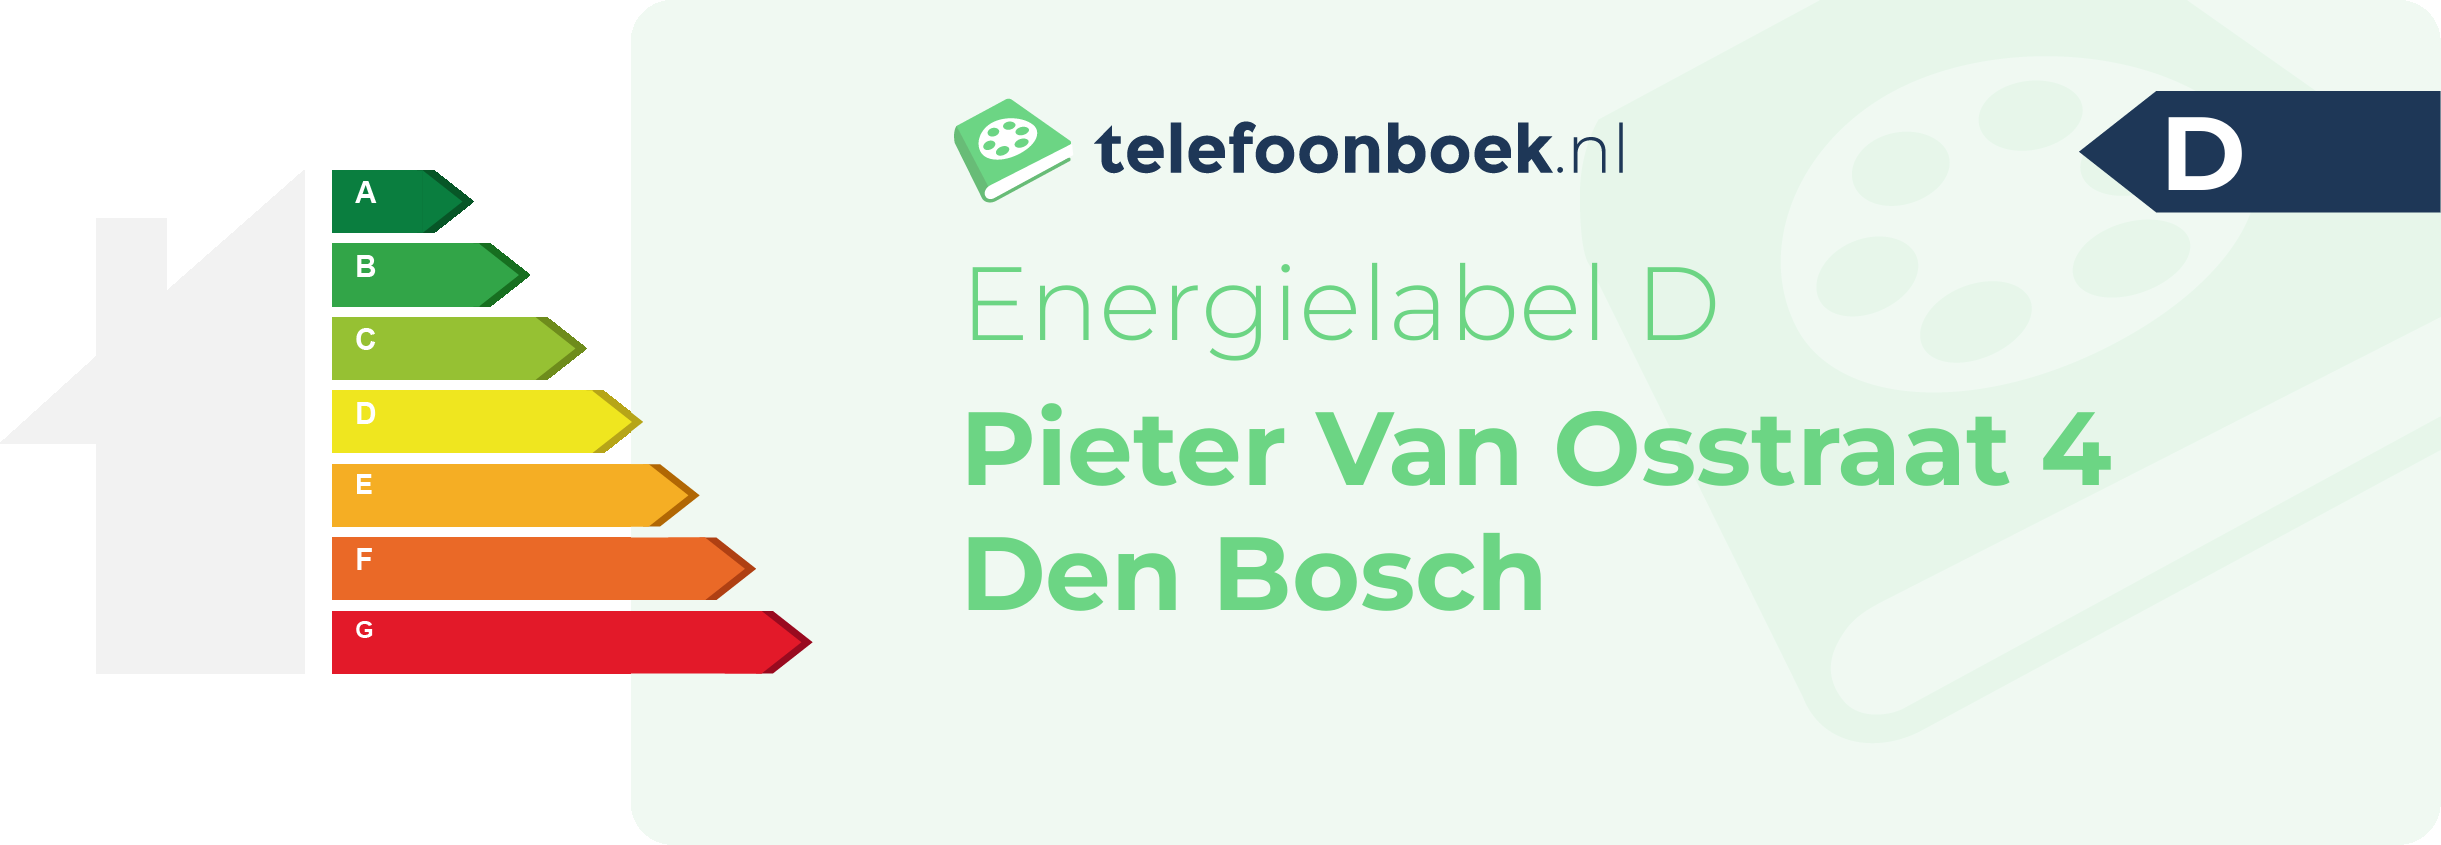 Energielabel Pieter Van Osstraat 4 Den Bosch